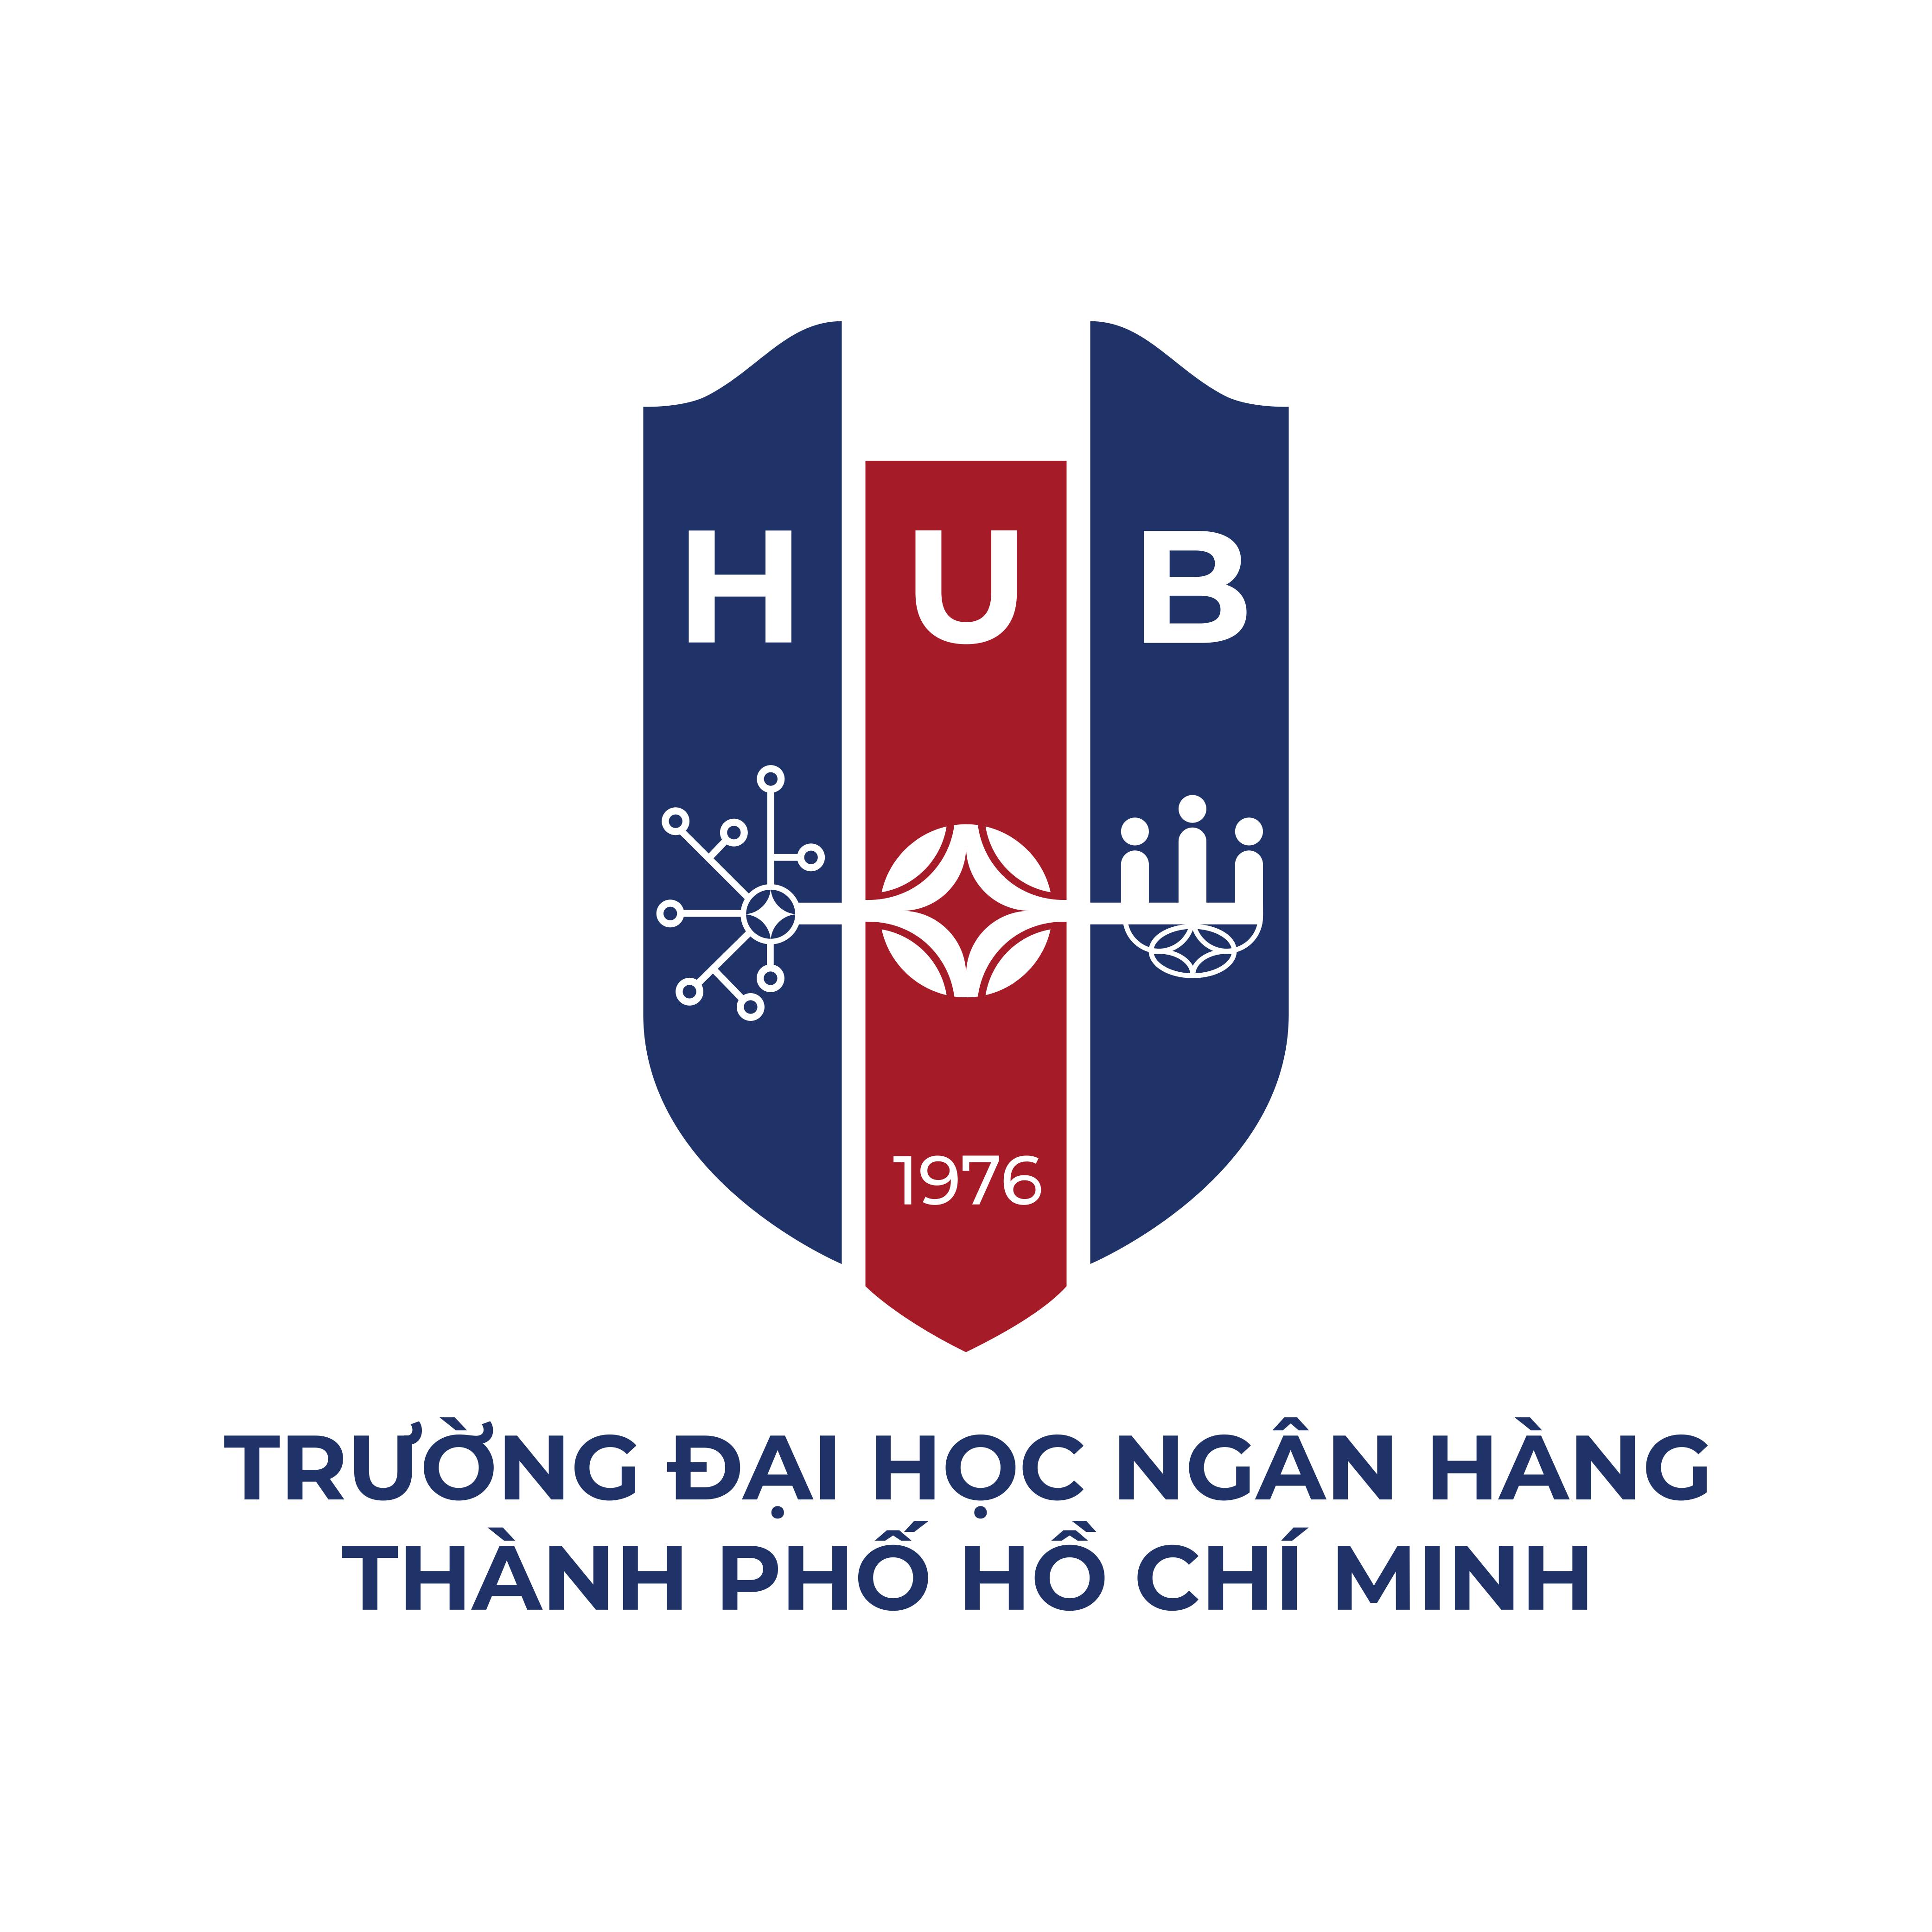 Mẫu thiết kế logo đại học ngân hàng sang trọng và độc đáo